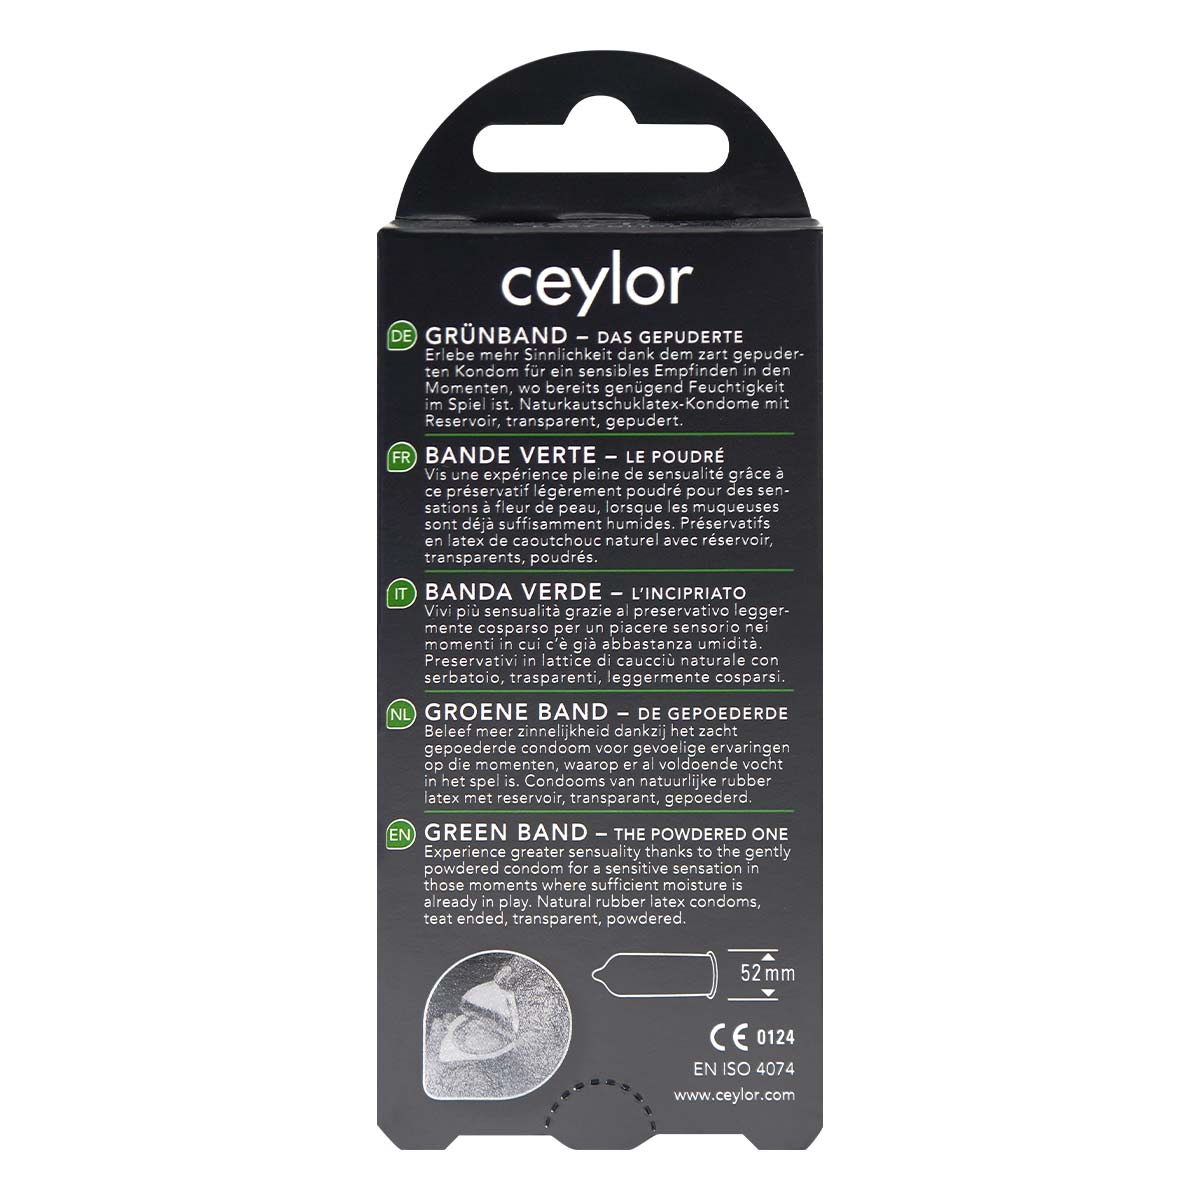 ceylor 綠帶 不含潤滑劑型 6 片裝 乳膠安全套-p_3